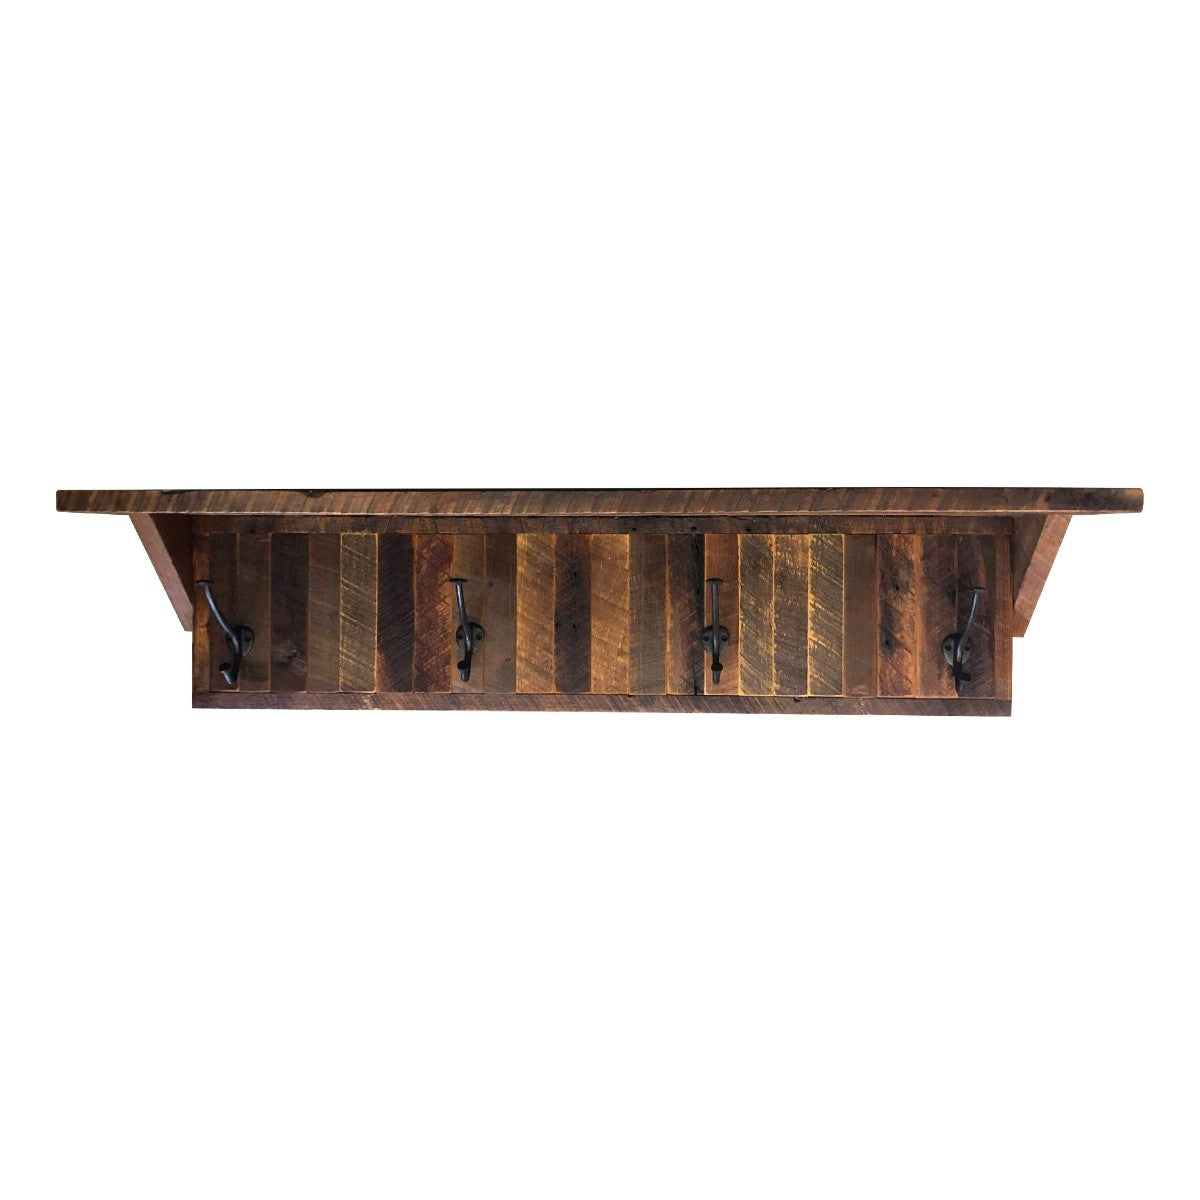 https://rusticreddoor.com/cdn/shop/products/4-hook-reclaimed-wood-coat-rack-shelf.jpg?v=1692672249&width=1445